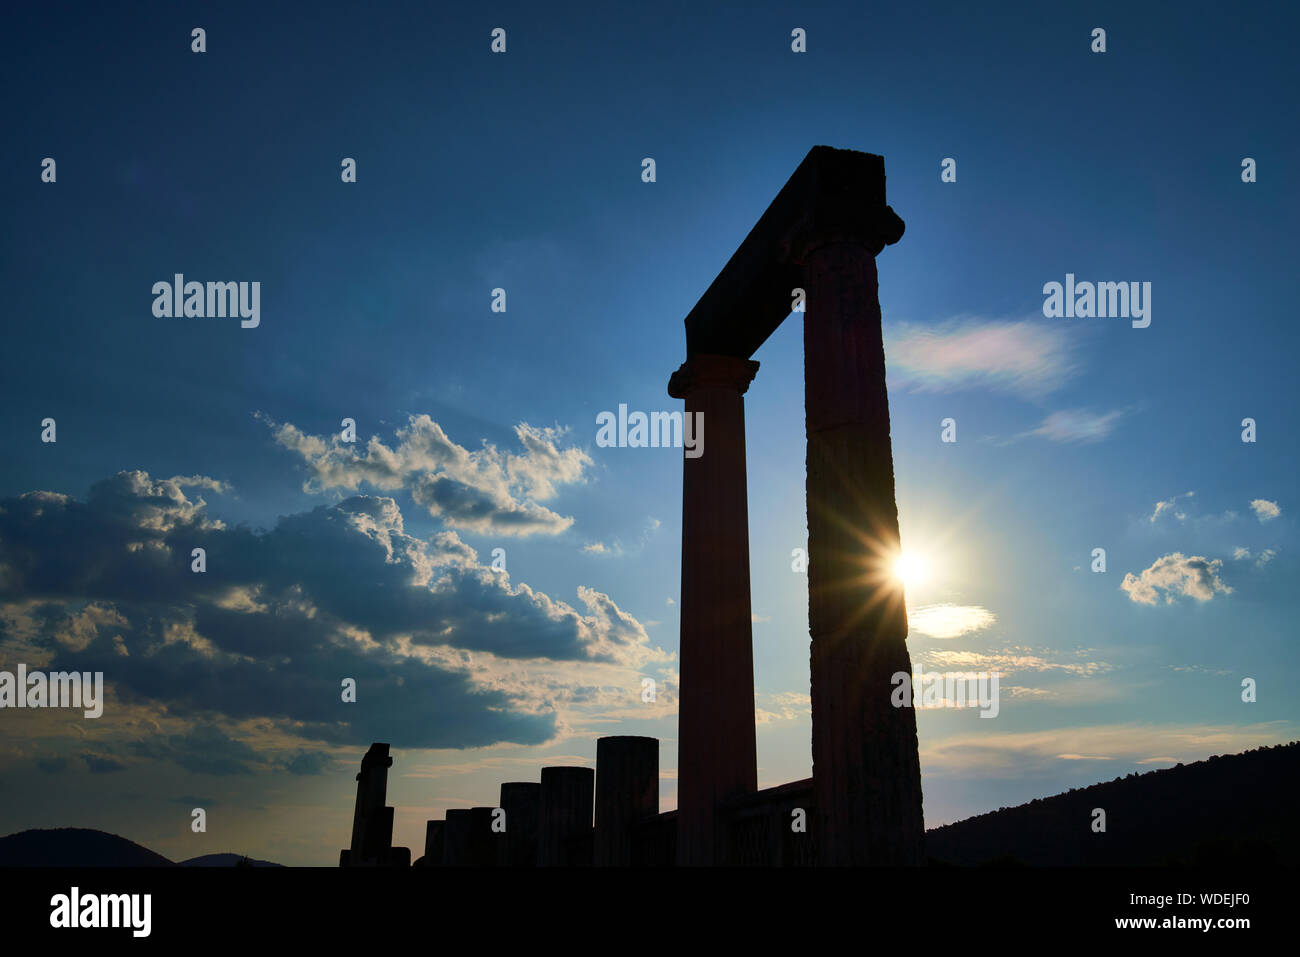 Heiligtum des Asklepios in Epidauros in der Peloponnes in Griechenland Stockfoto